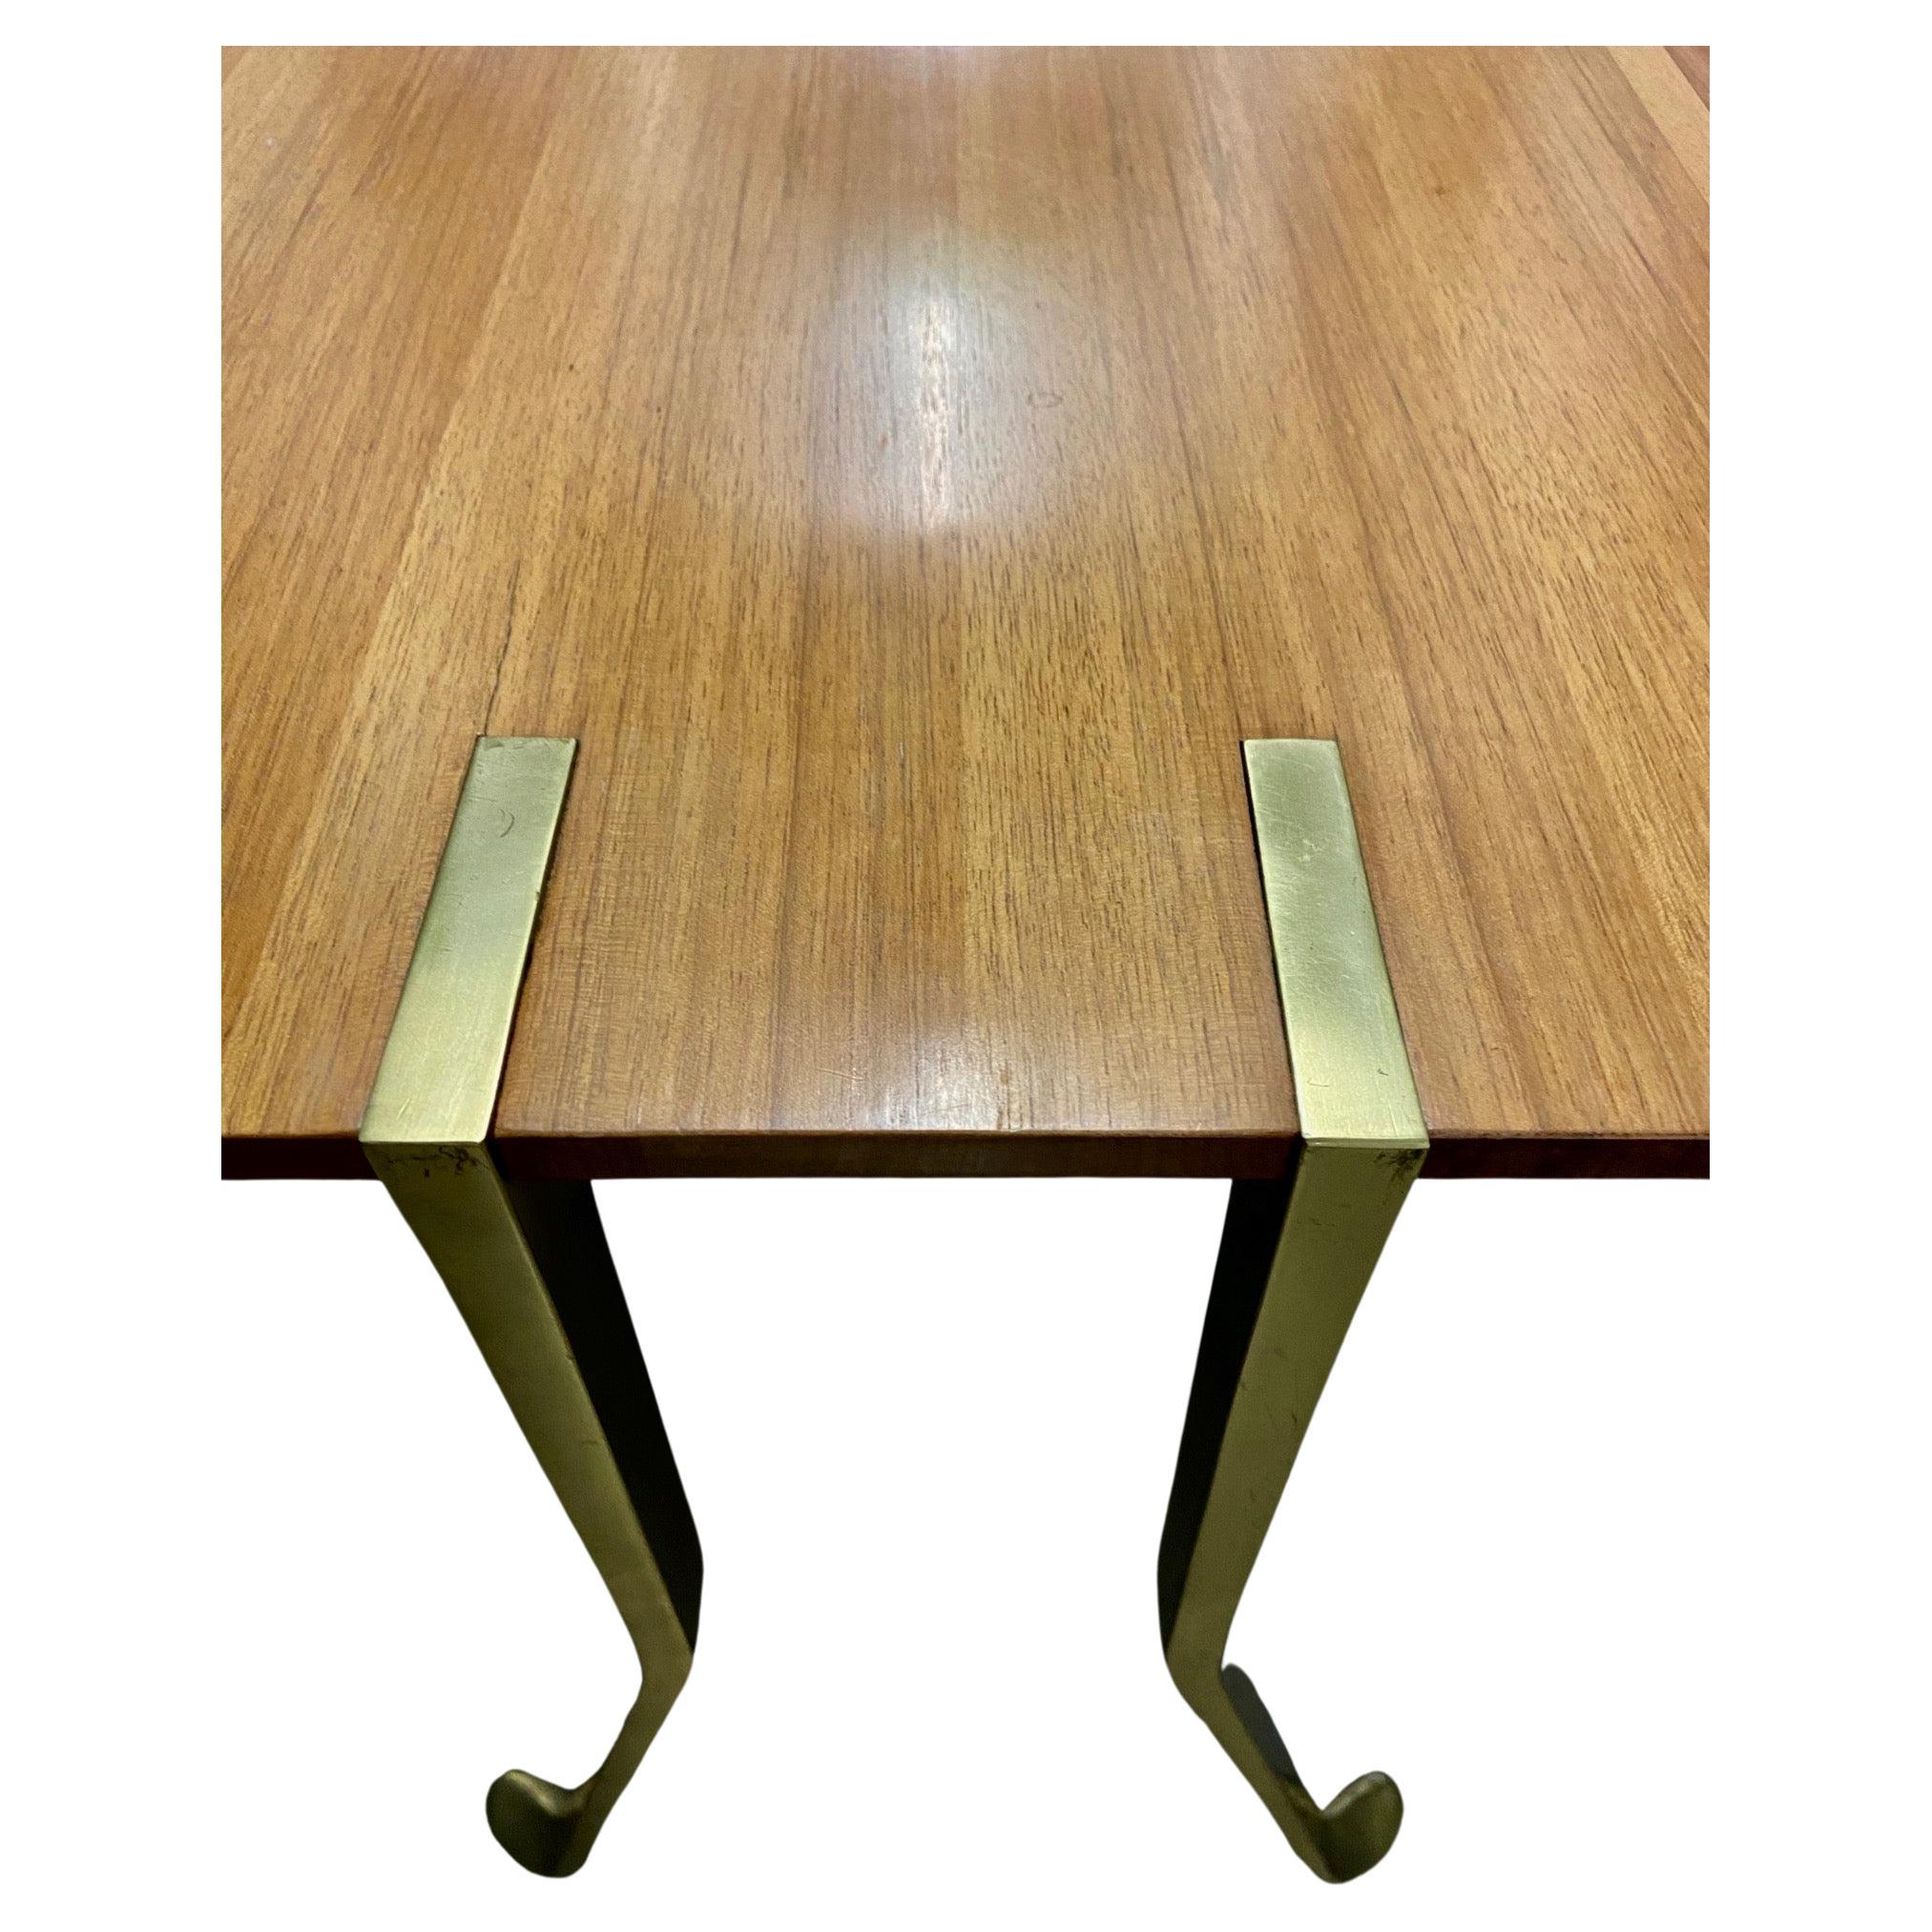 ein sehr gut gestalteter und schön gearbeiteter Tisch aus Holz und Metall. 
circa 1950er bis 60er Jahre